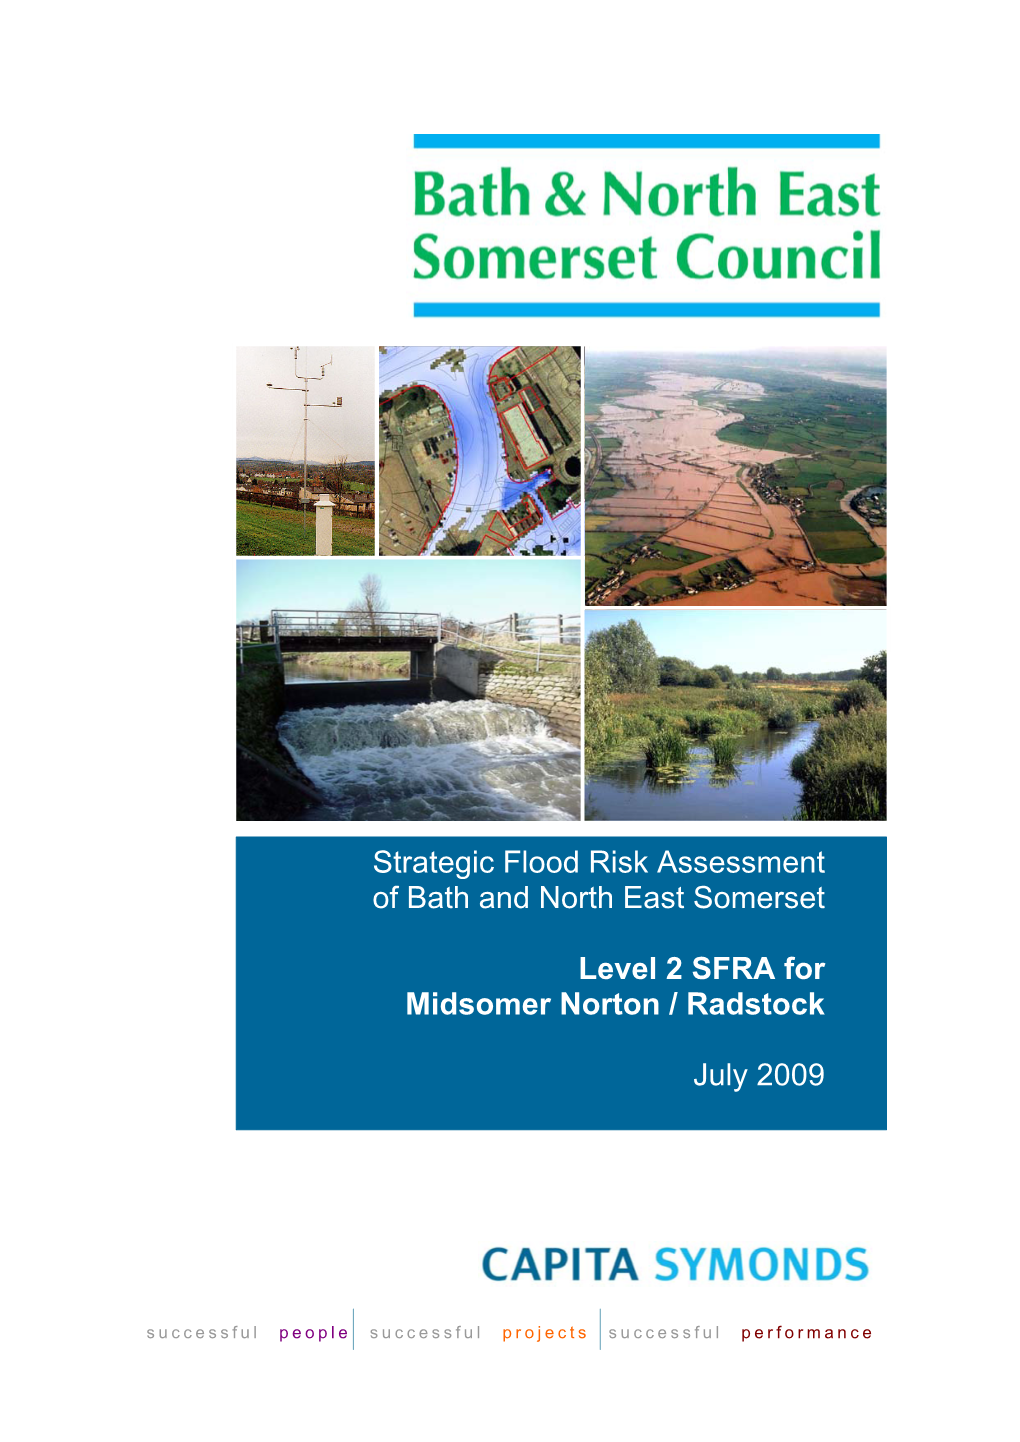 Strategic Flood Risk Assessment- Level 2 SFRA for Midsomer Norton and Radstock- July 2009